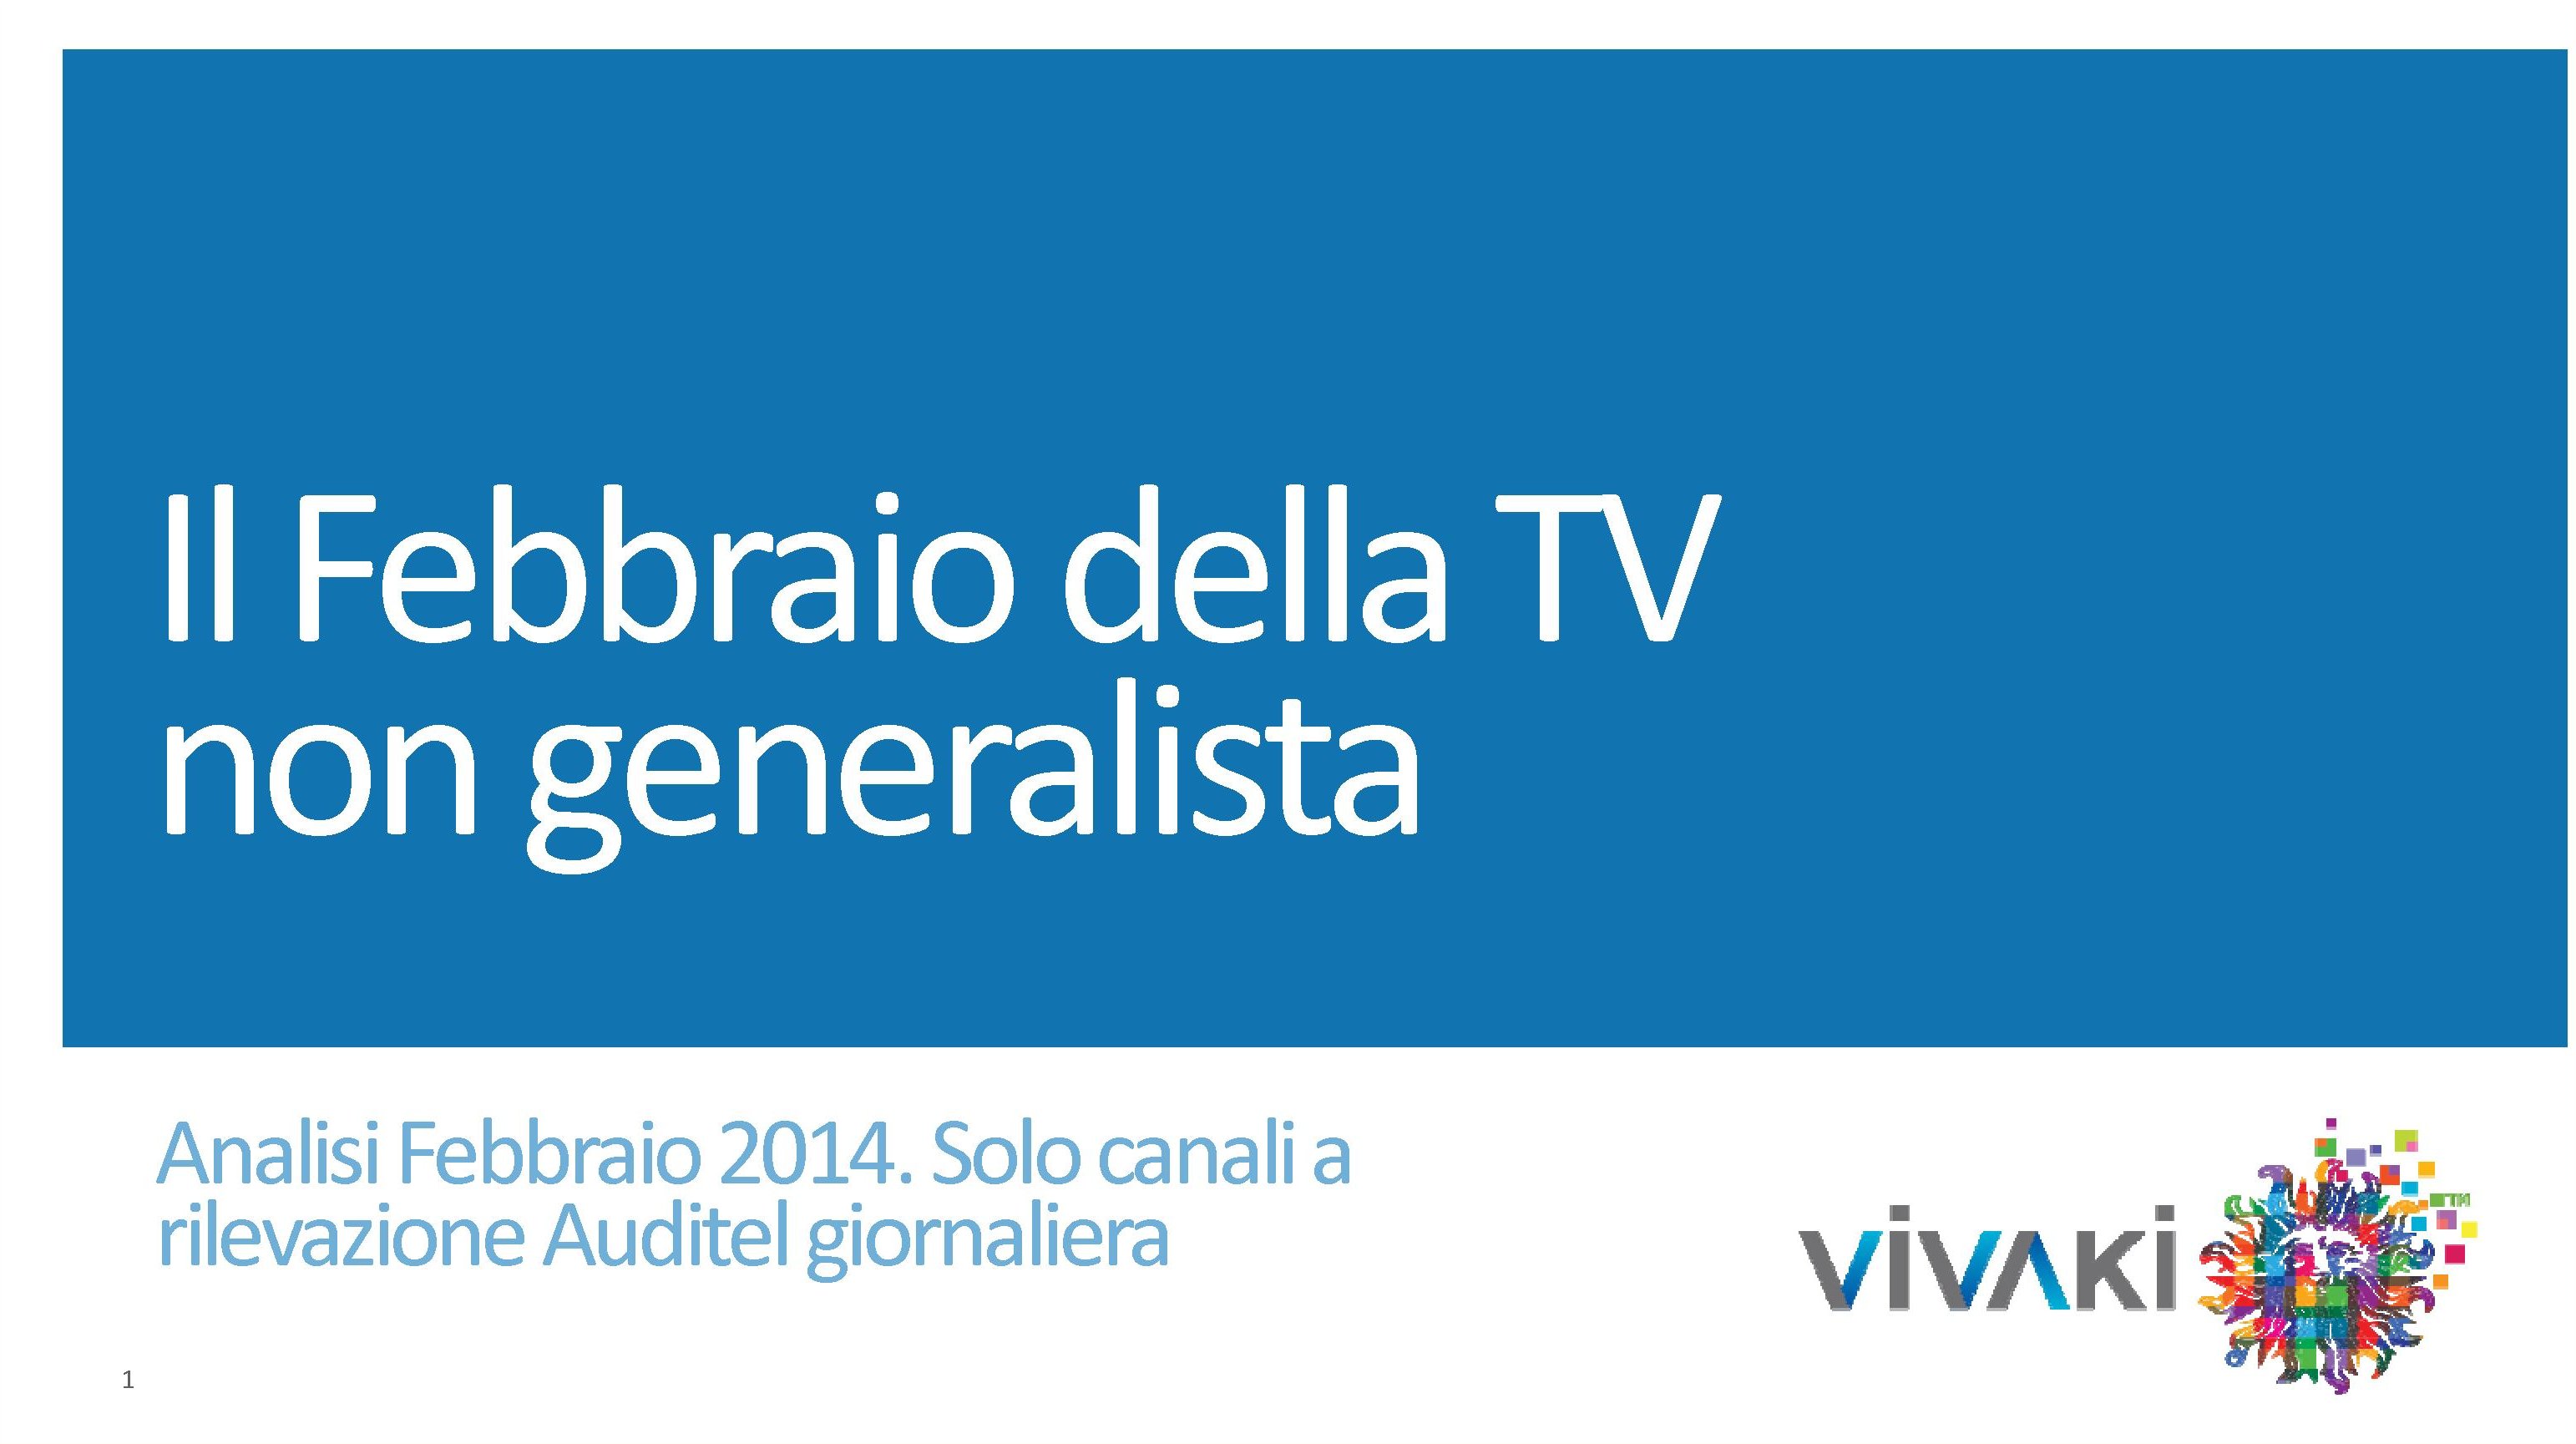 Gli ascolti della tv non generalista [SAT e DTT] | Febbraio 2014 (analisi VivaKi)